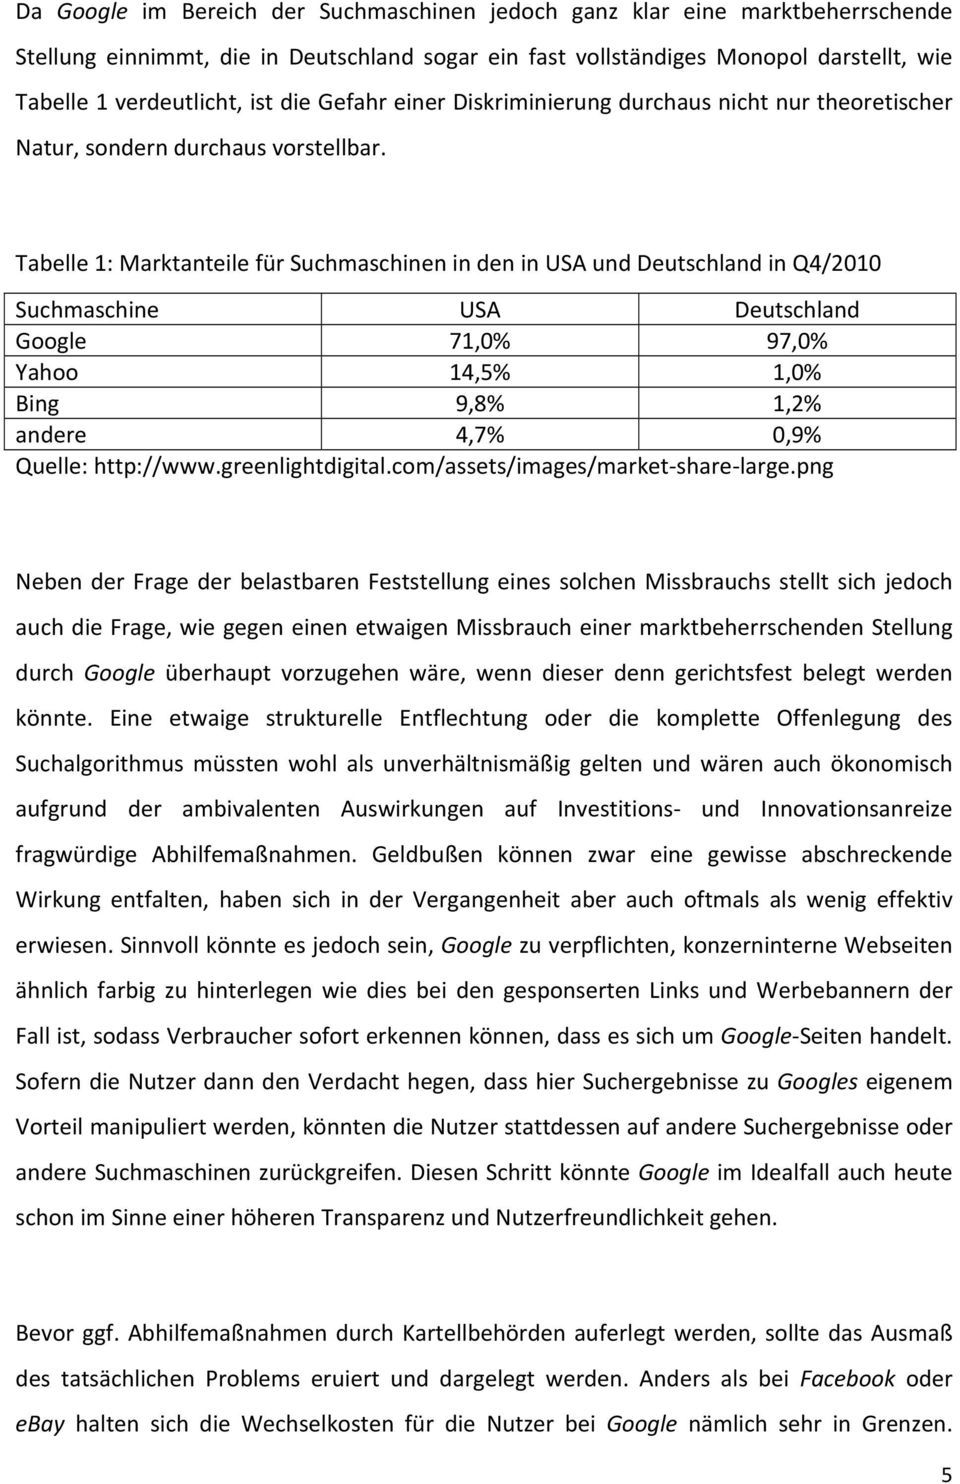 Tabelle 1: Marktanteile für Suchmaschinen in den in USA und Deutschland in Q4/2010 Suchmaschine USA Deutschland Google 71,0% 97,0% Yahoo 14,5% 1,0% Bing 9,8% 1,2% andere 4,7% 0,9% Quelle: http://www.